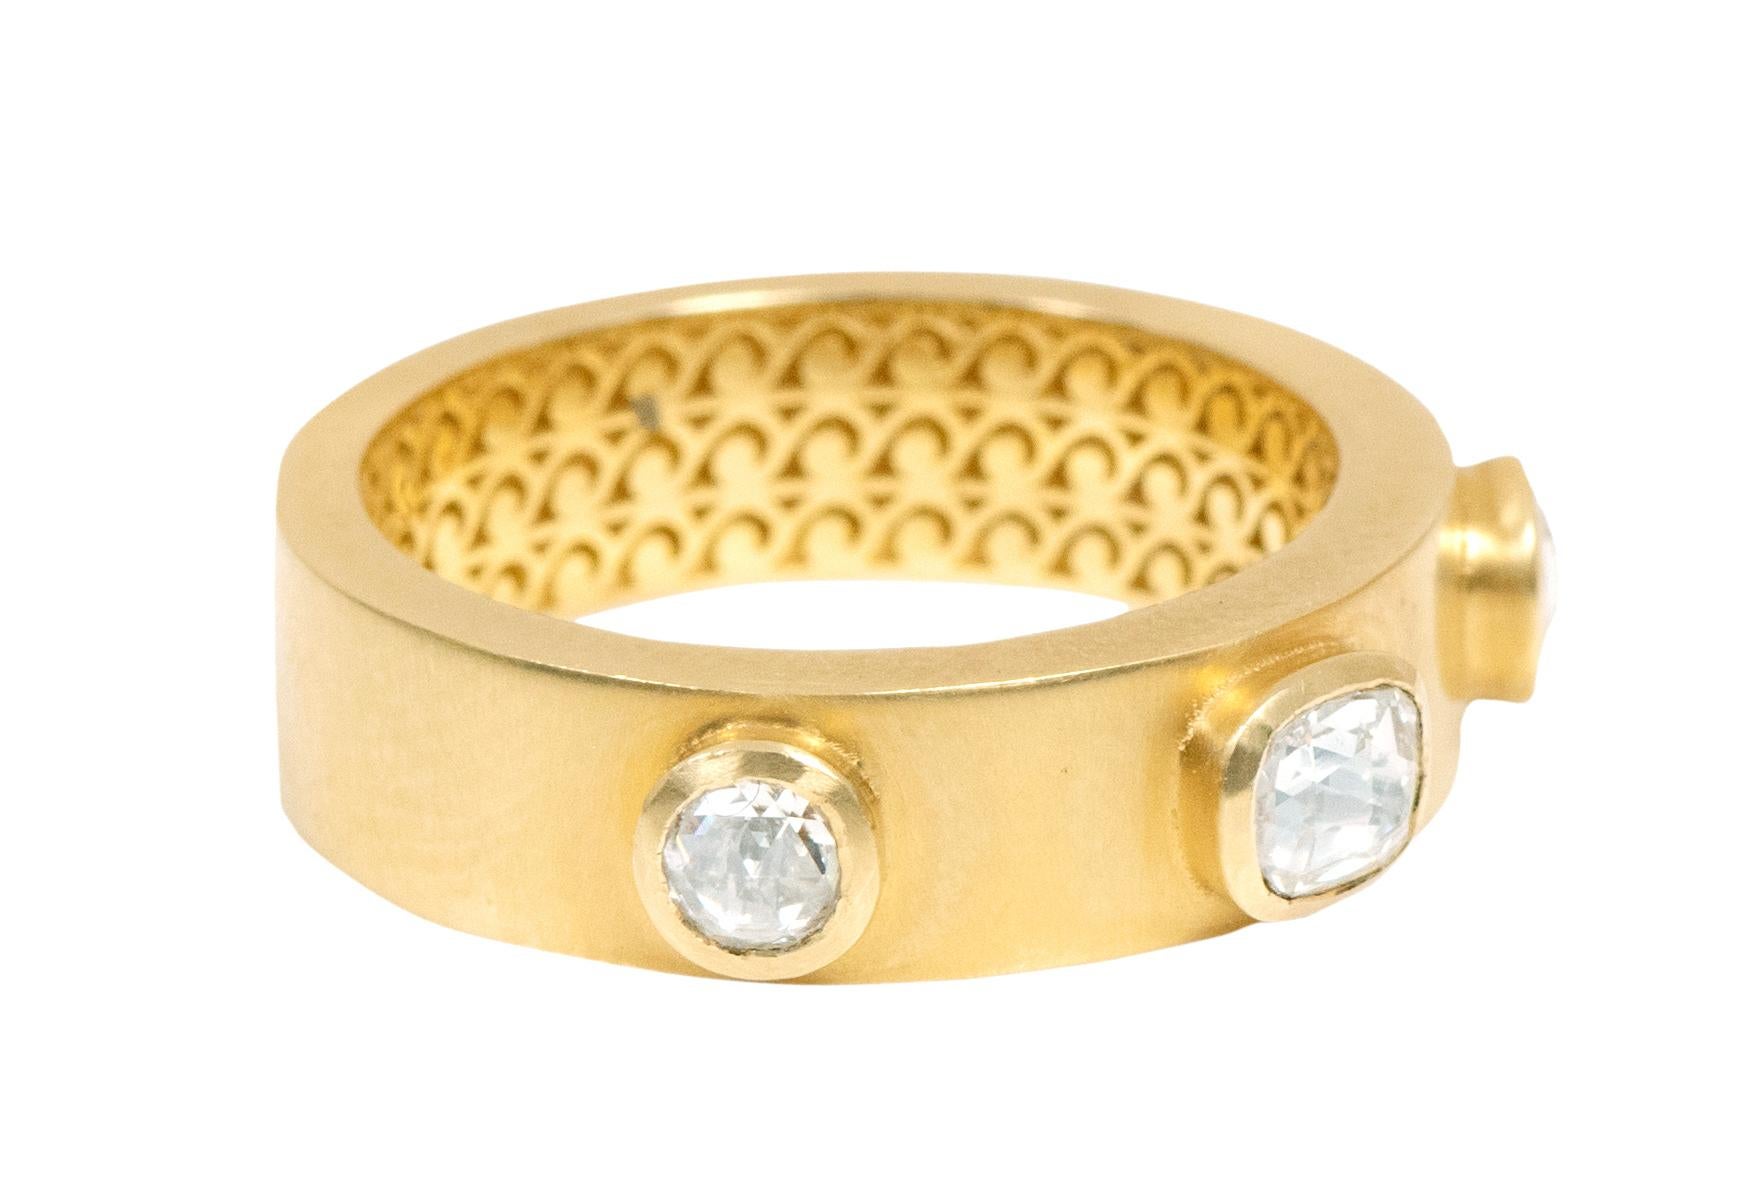 dreistein-Ring aus 18 Karat Gelbgold mit Diamant im Rosenschliff im Art-Deco-Stil

Dieser beispielhafte Solitär-Diamant im Rosenschliff ist ein beeindruckender Art-Deco-Ring. Der breite Ring in italienischem Gelbgold ist mit 2 runden